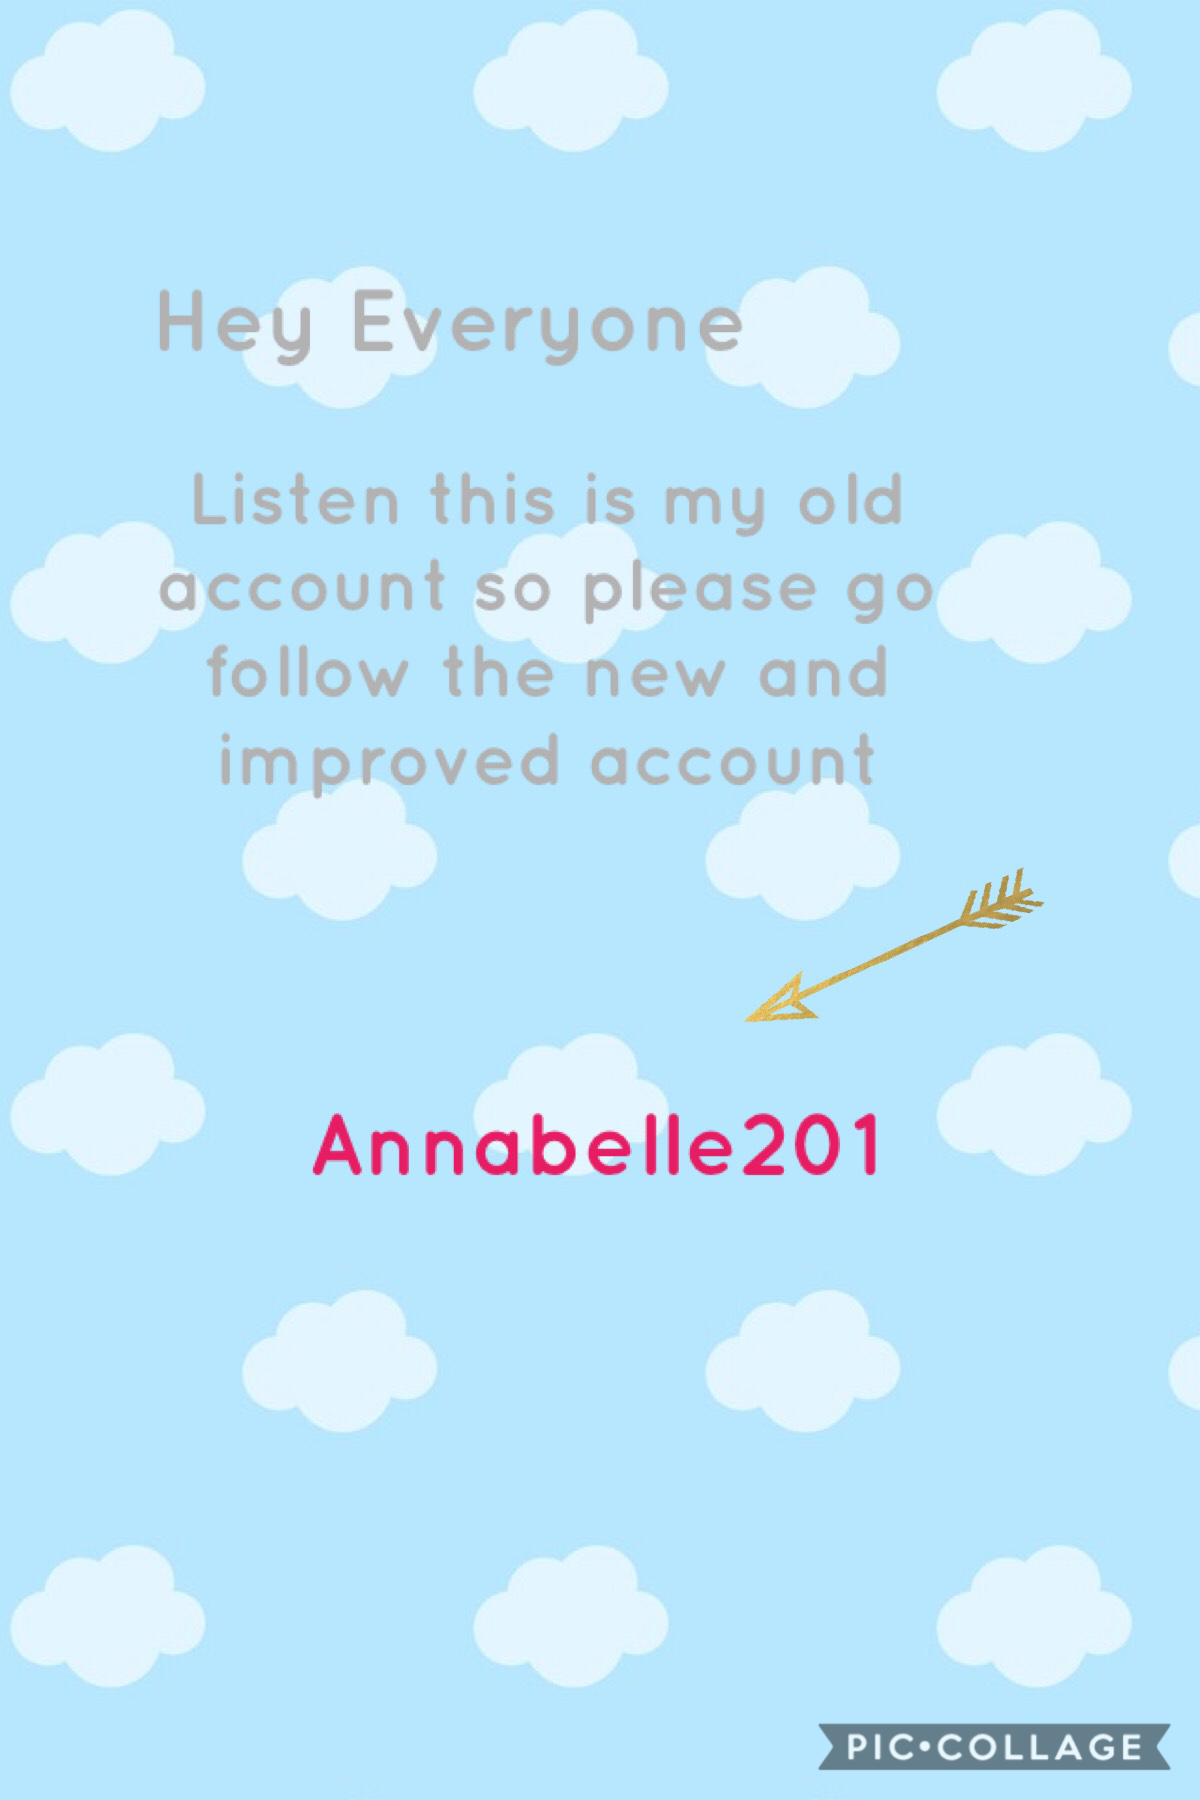 Annabelle201 